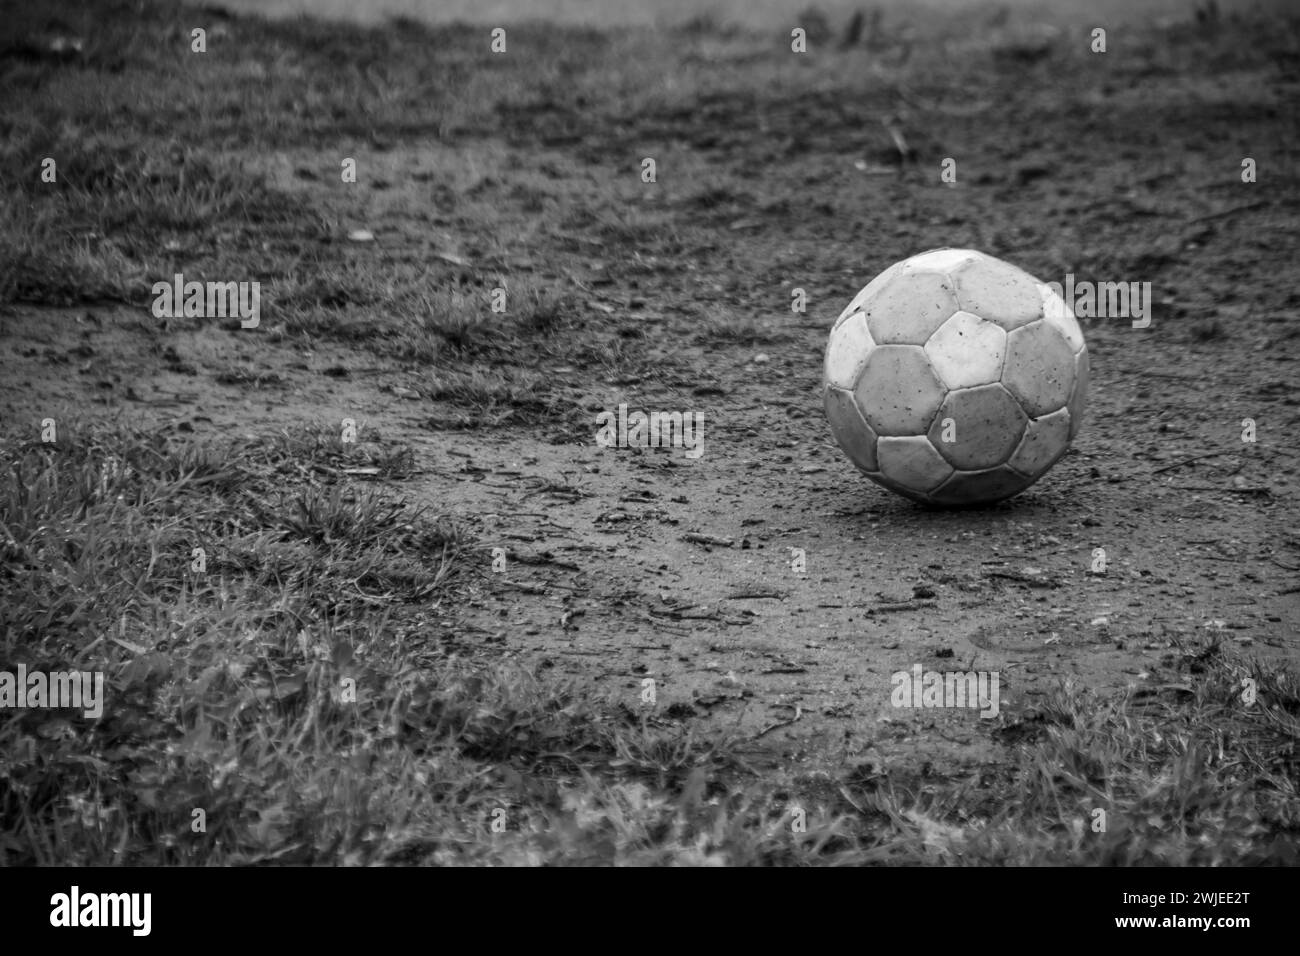 Un ballon de football noir et blanc solitaire reposant sur un terrain vide Banque D'Images